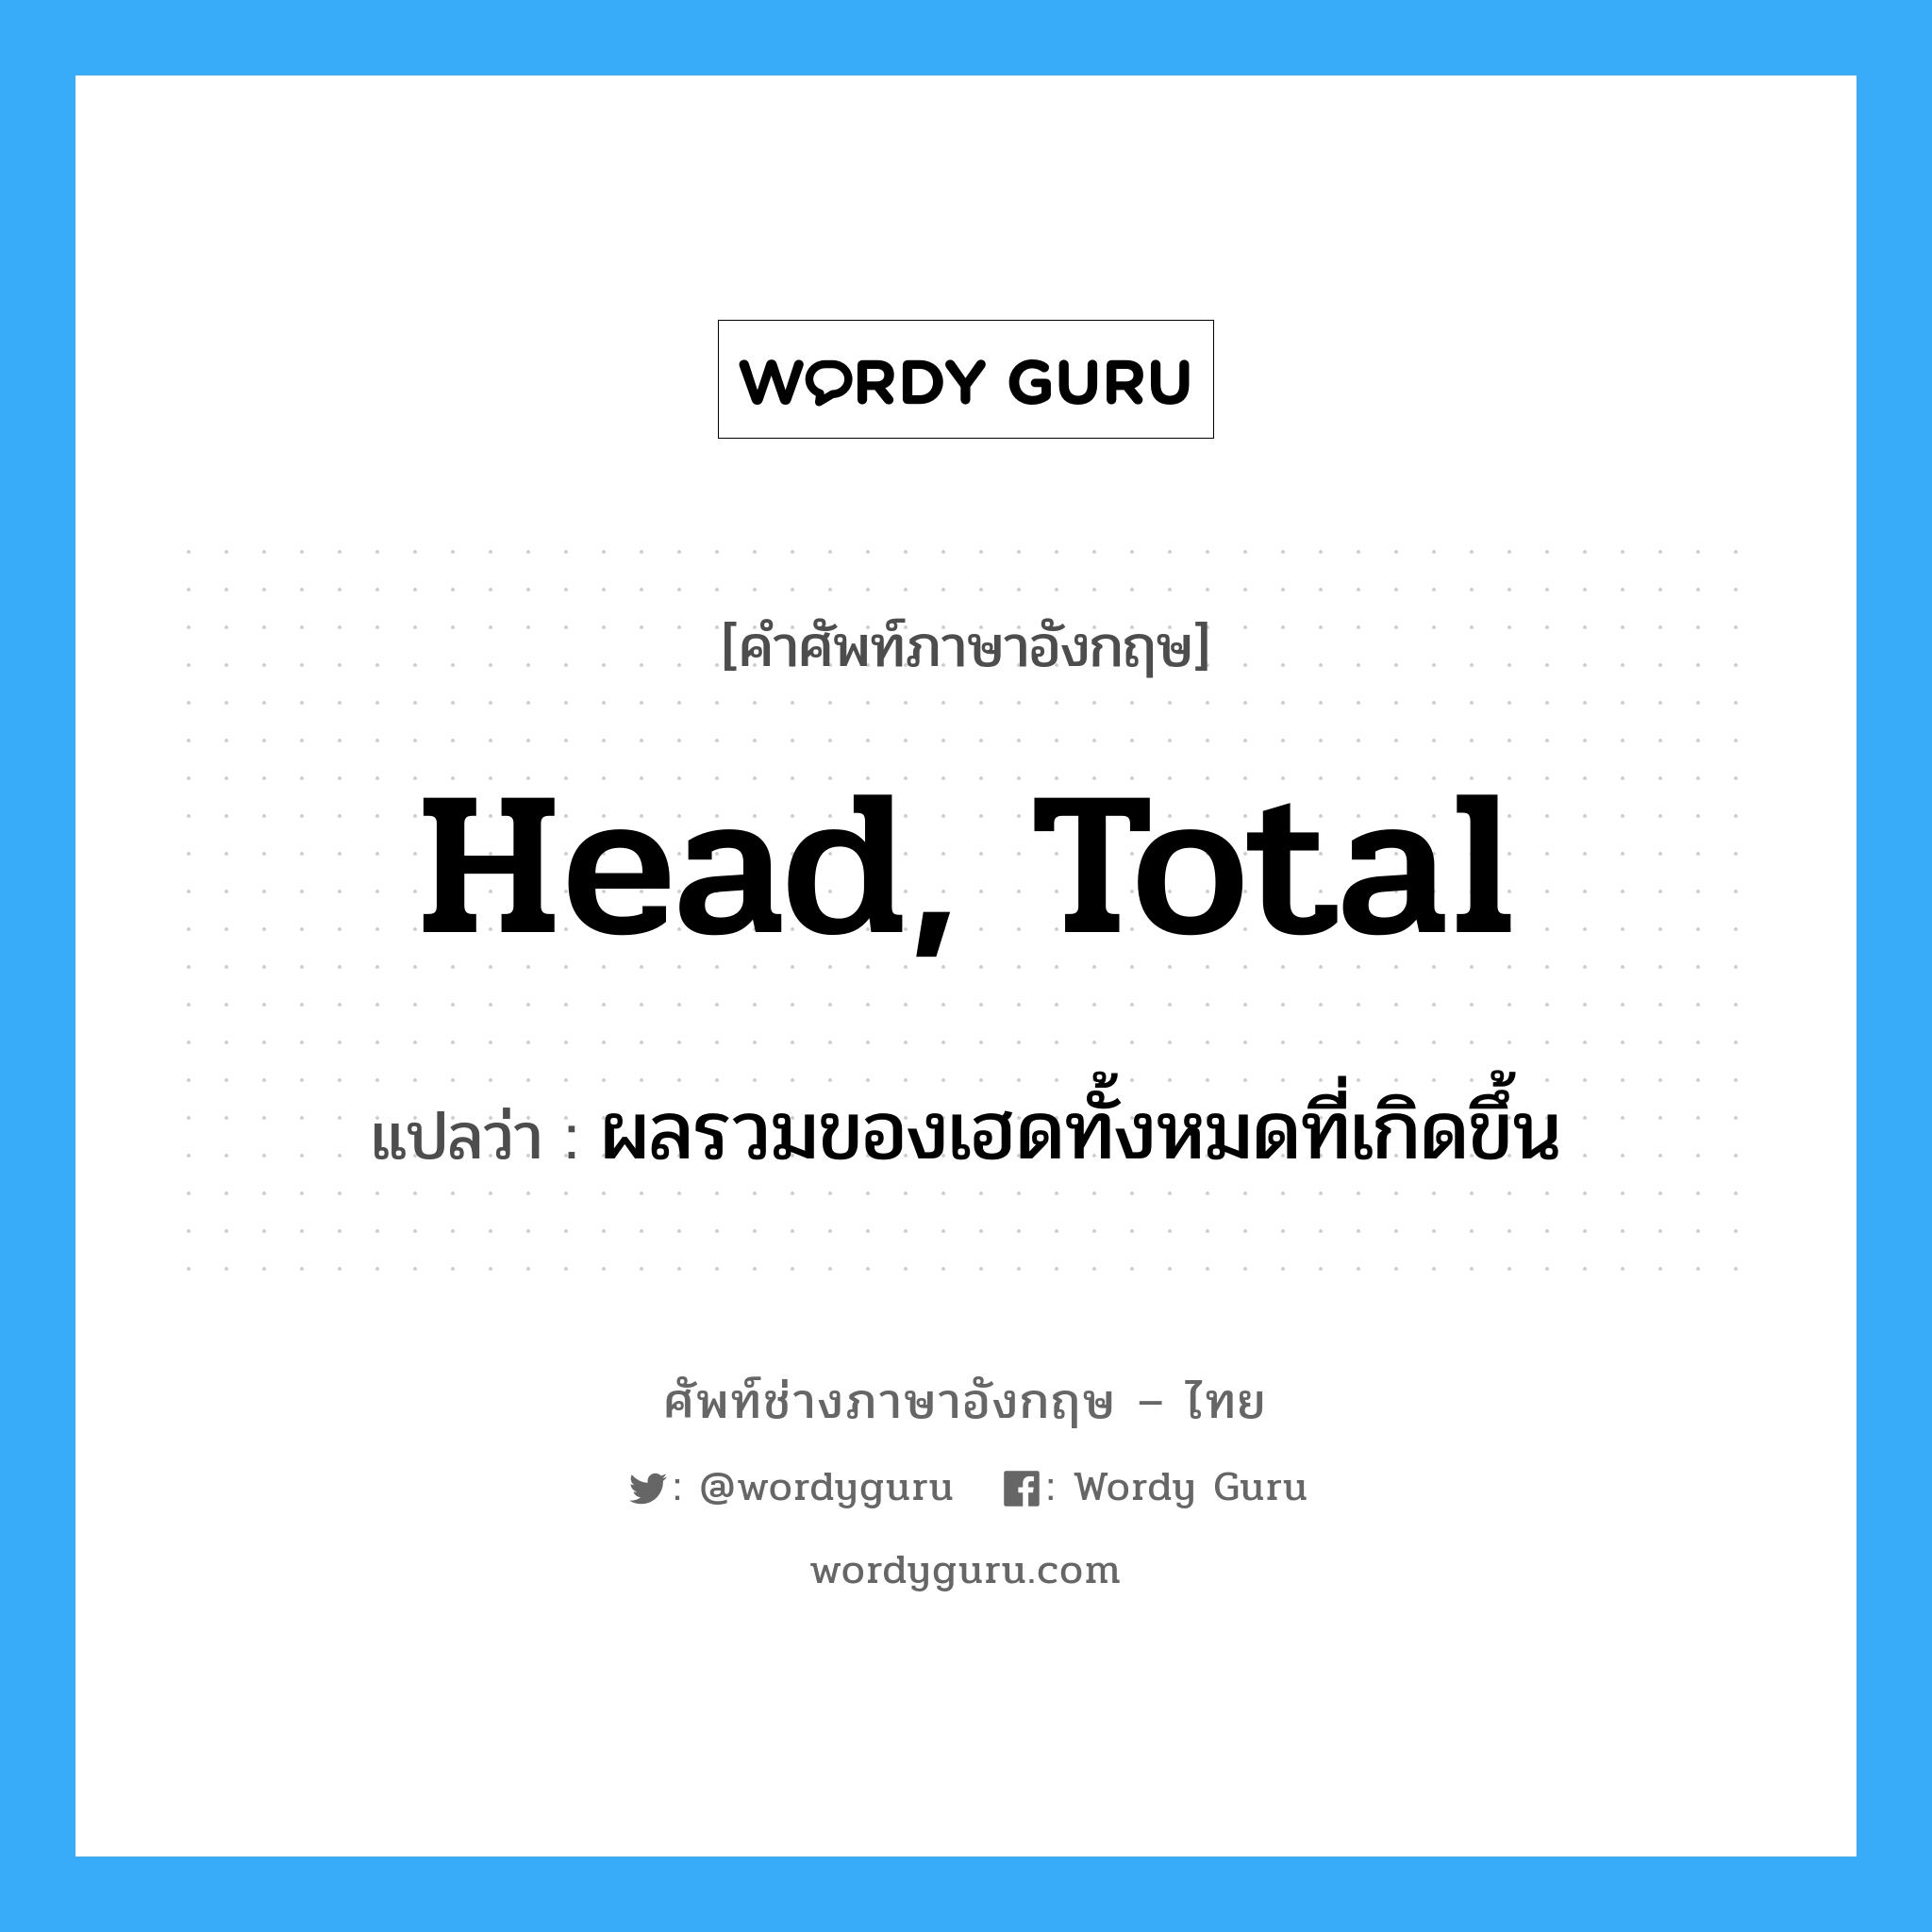 head, total แปลว่า?, คำศัพท์ช่างภาษาอังกฤษ - ไทย head, total คำศัพท์ภาษาอังกฤษ head, total แปลว่า ผลรวมของเฮดทั้งหมดที่เกิดขึ้น